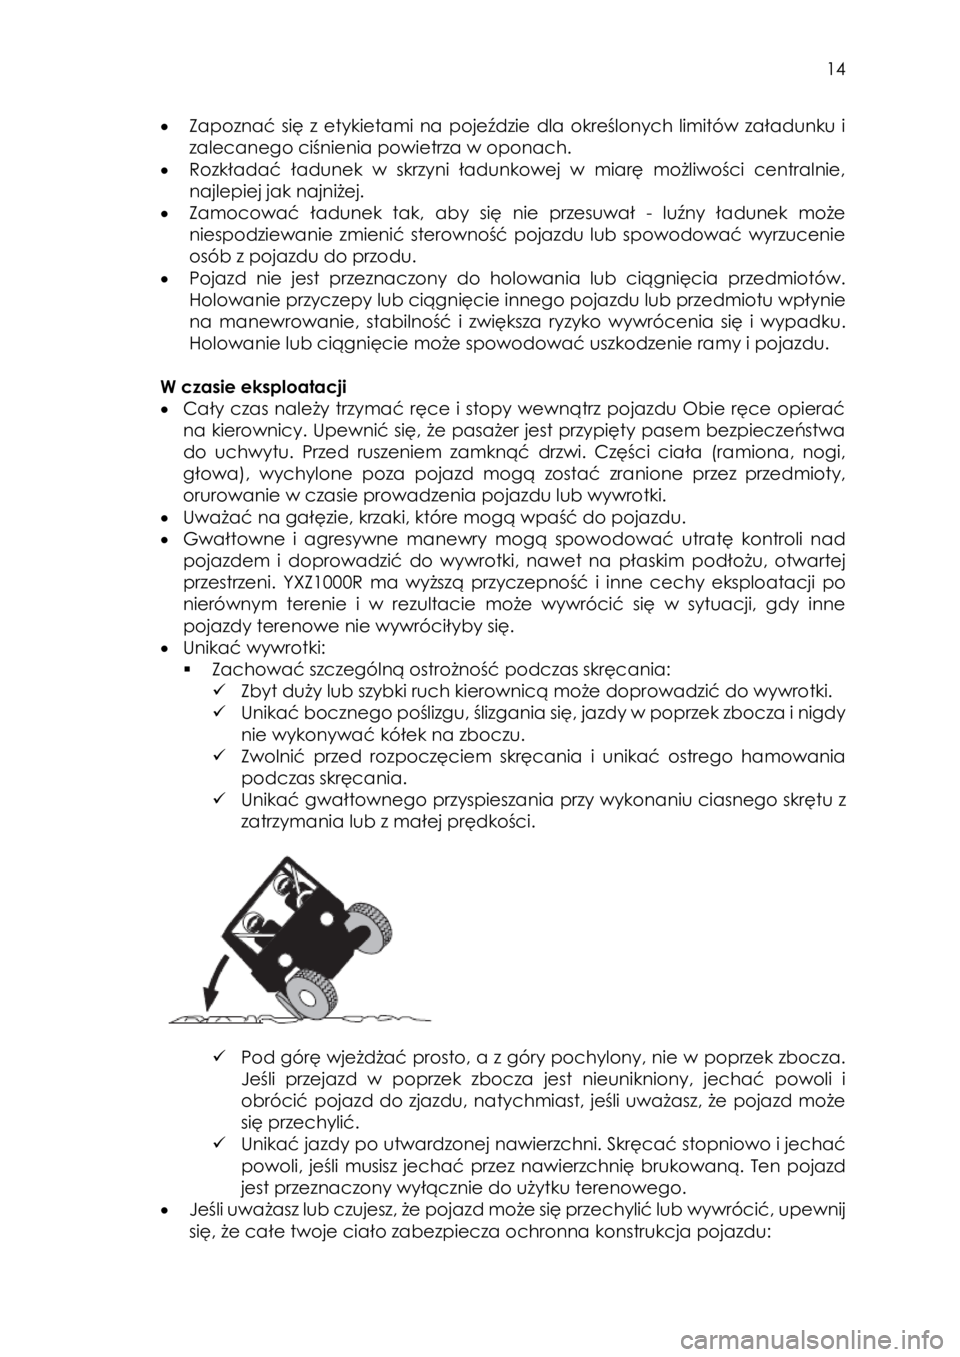 YAMAHA YXZ1000R SS 2017  Instrukcja obsługi (in Polish)  14 
• Zapoznać  się  z  etykietami  na  pojeździe  dla  określonych  limitów  załadunku  i 
zalecanego ciśnienia powietrza w oponach.  
• Rozkładać ładunek w skrzyni  ładunkowej  w  mi